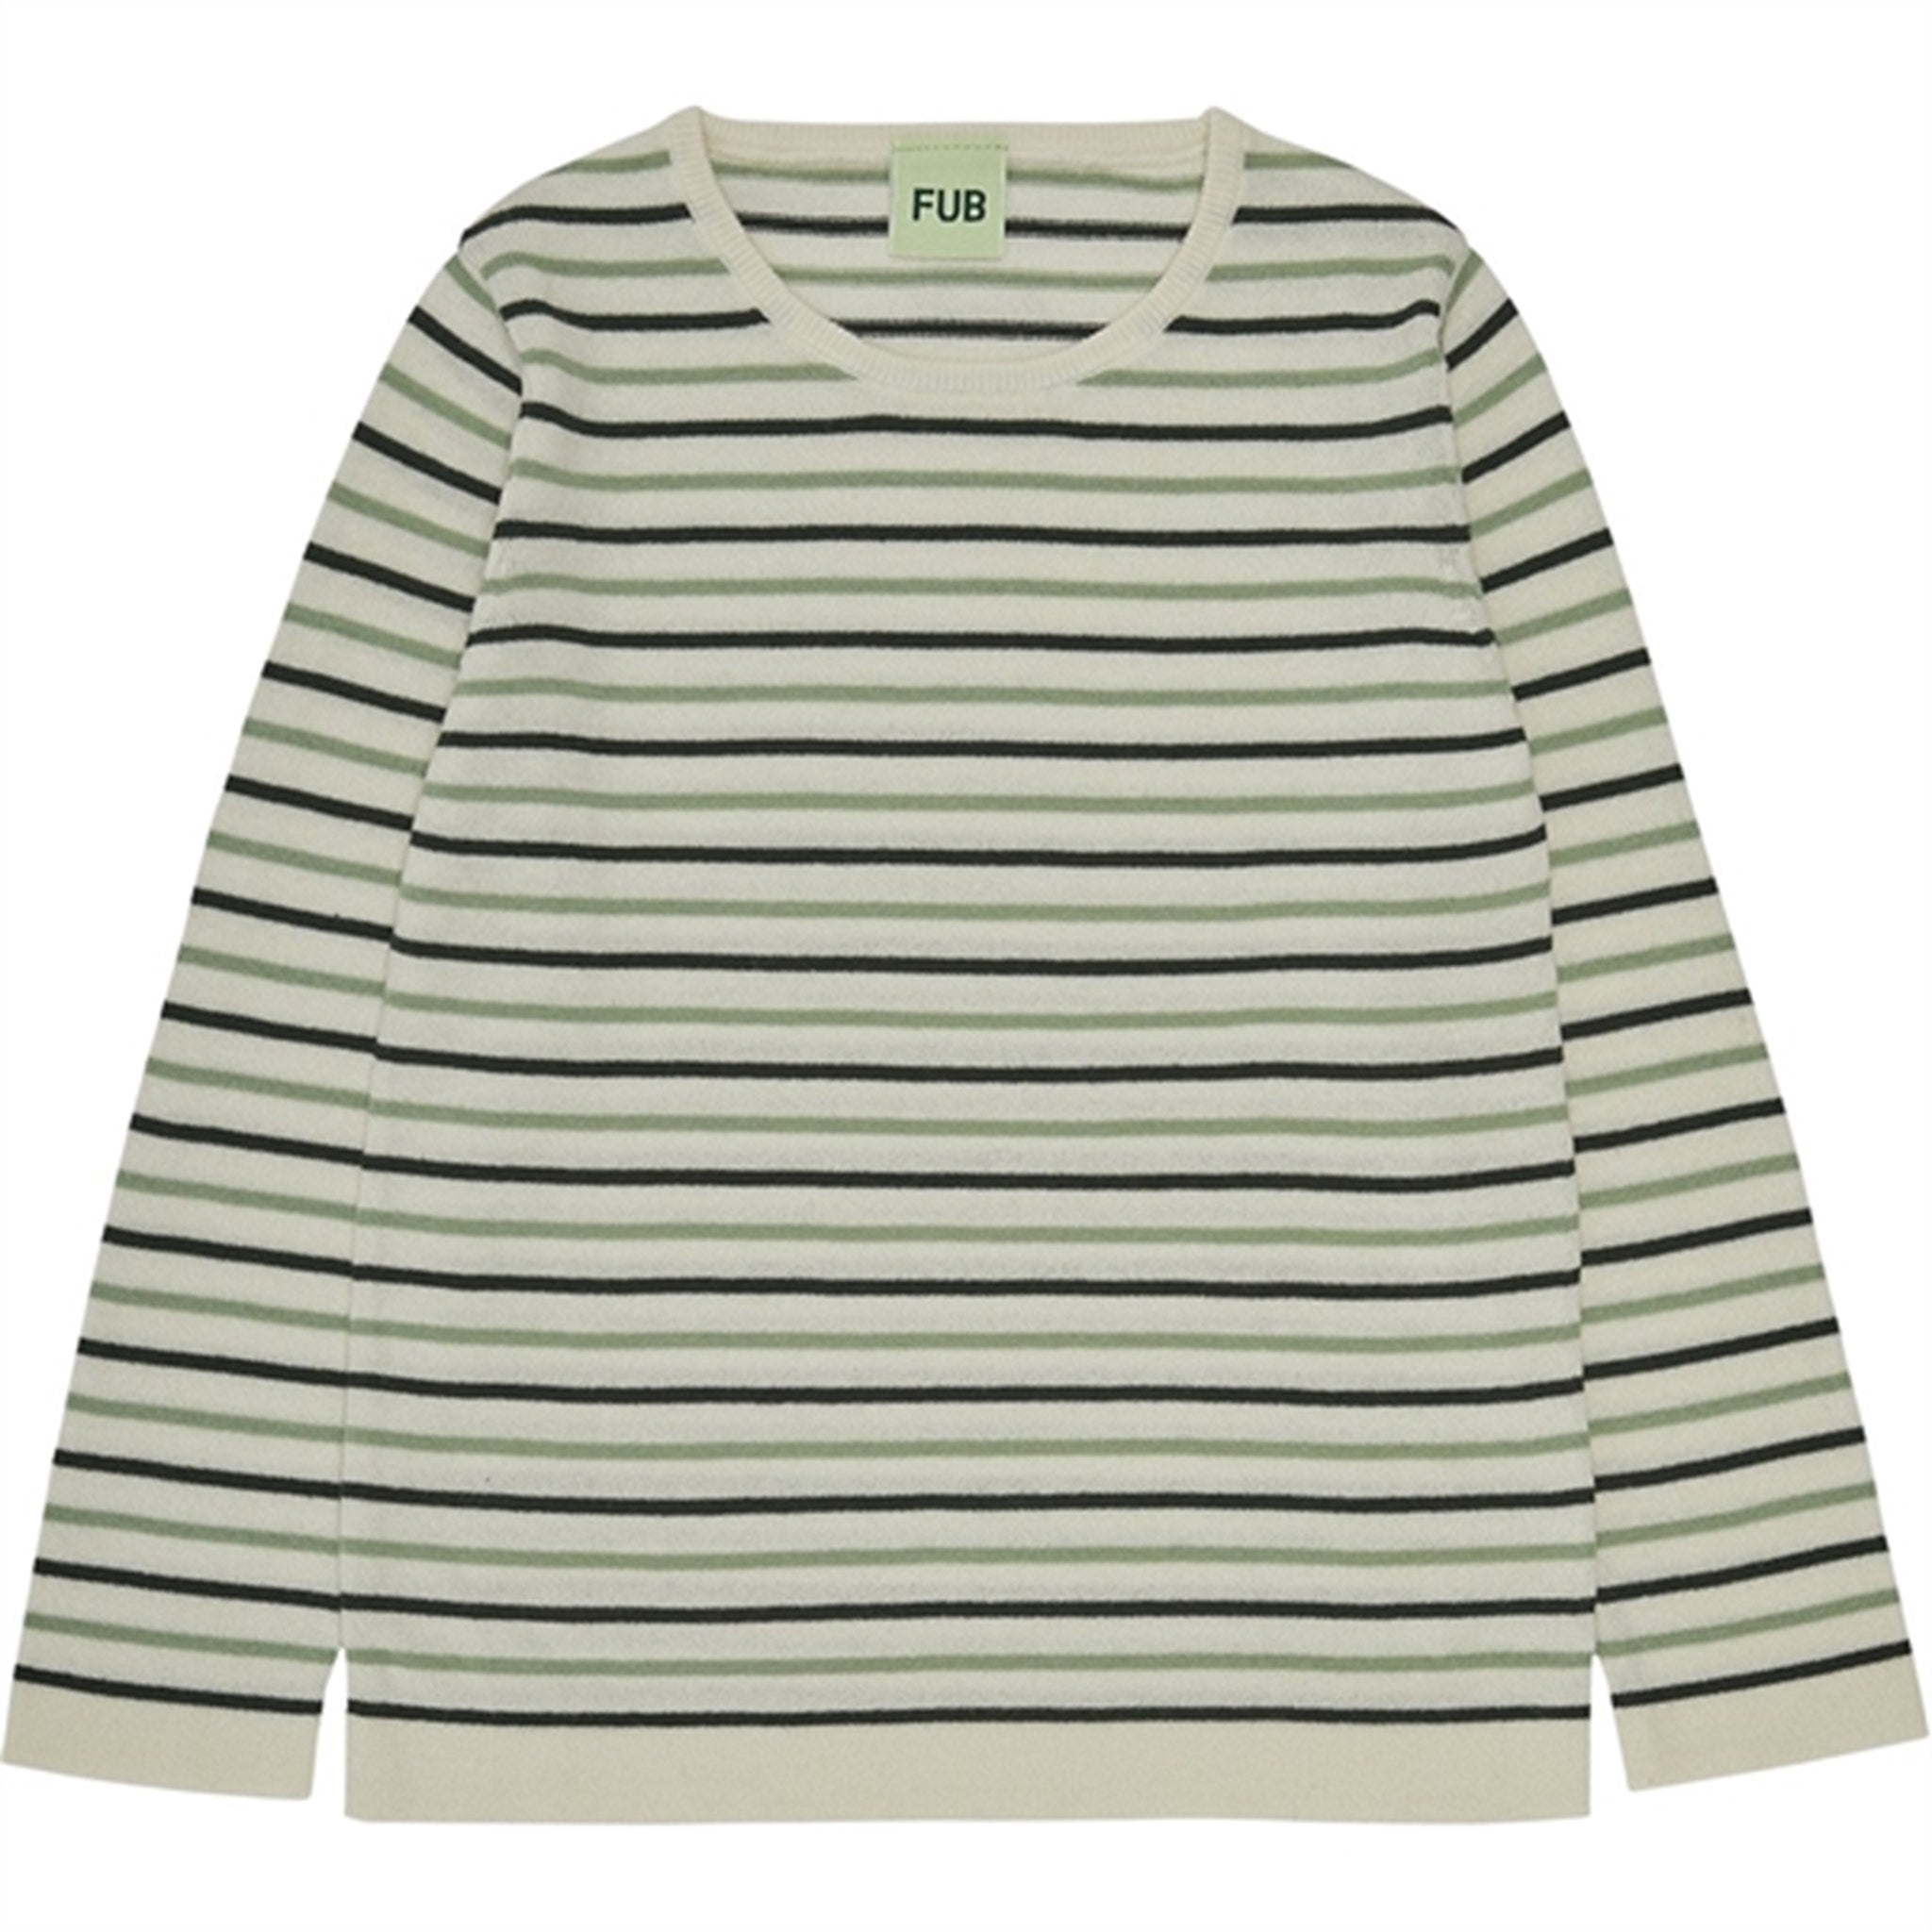 FUB Contrast Striped Bluse Ecru/Deep Green/Leaf